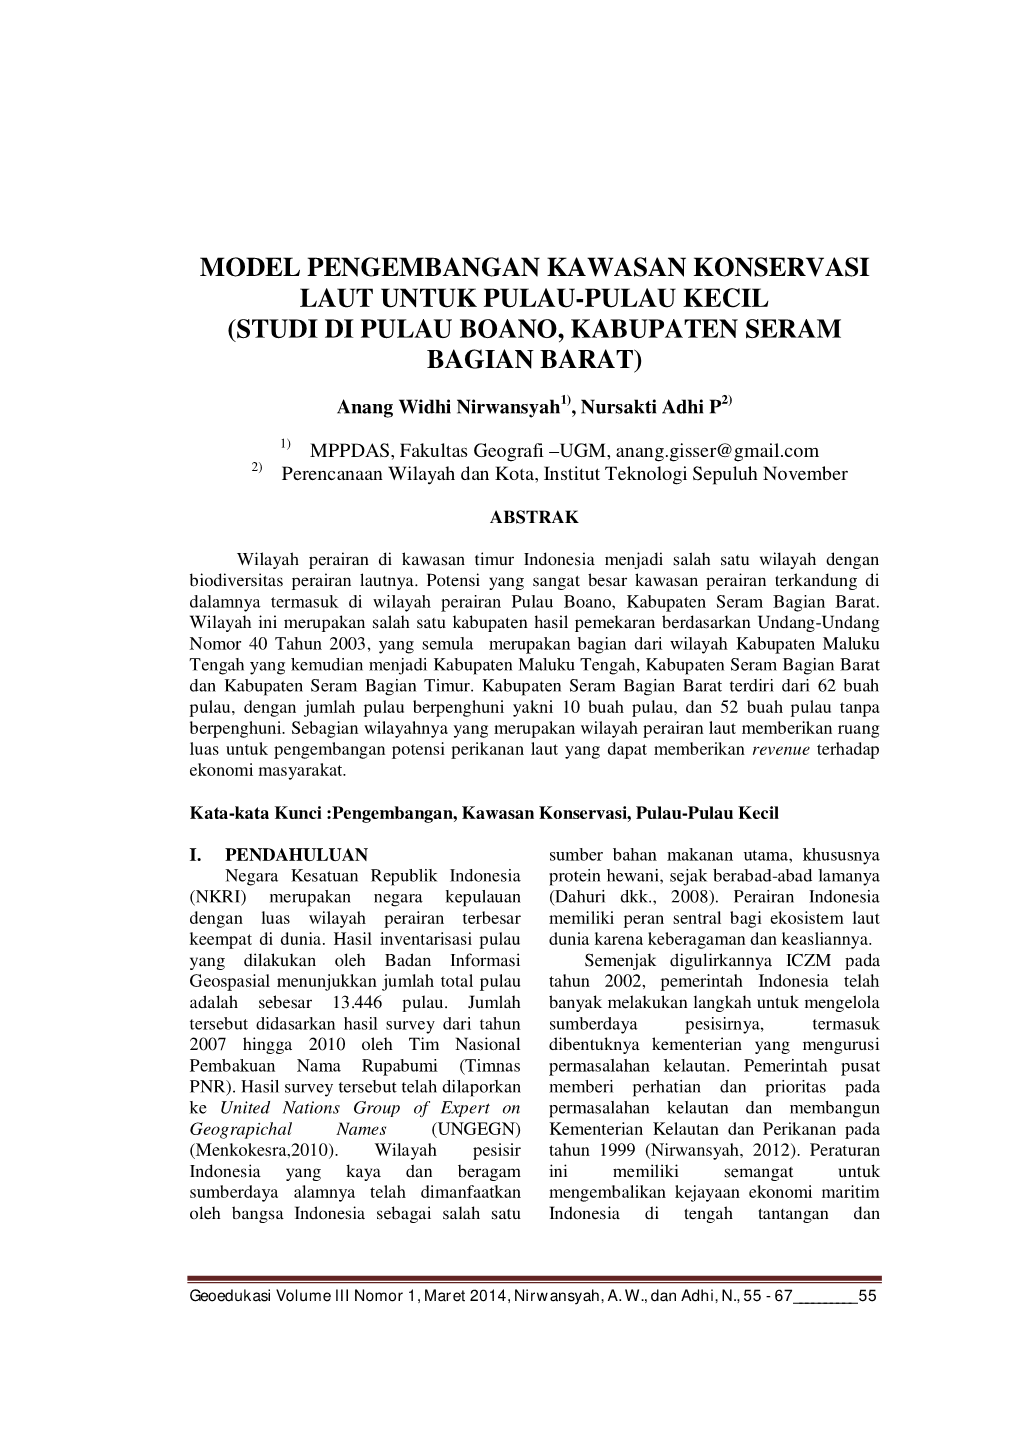 Model Pengembangan Kawasan Konservasi Laut Untuk Pulau-Pulau Kecil (Studi Di Pulau Boano, Kabupaten Seram Bagian Barat)